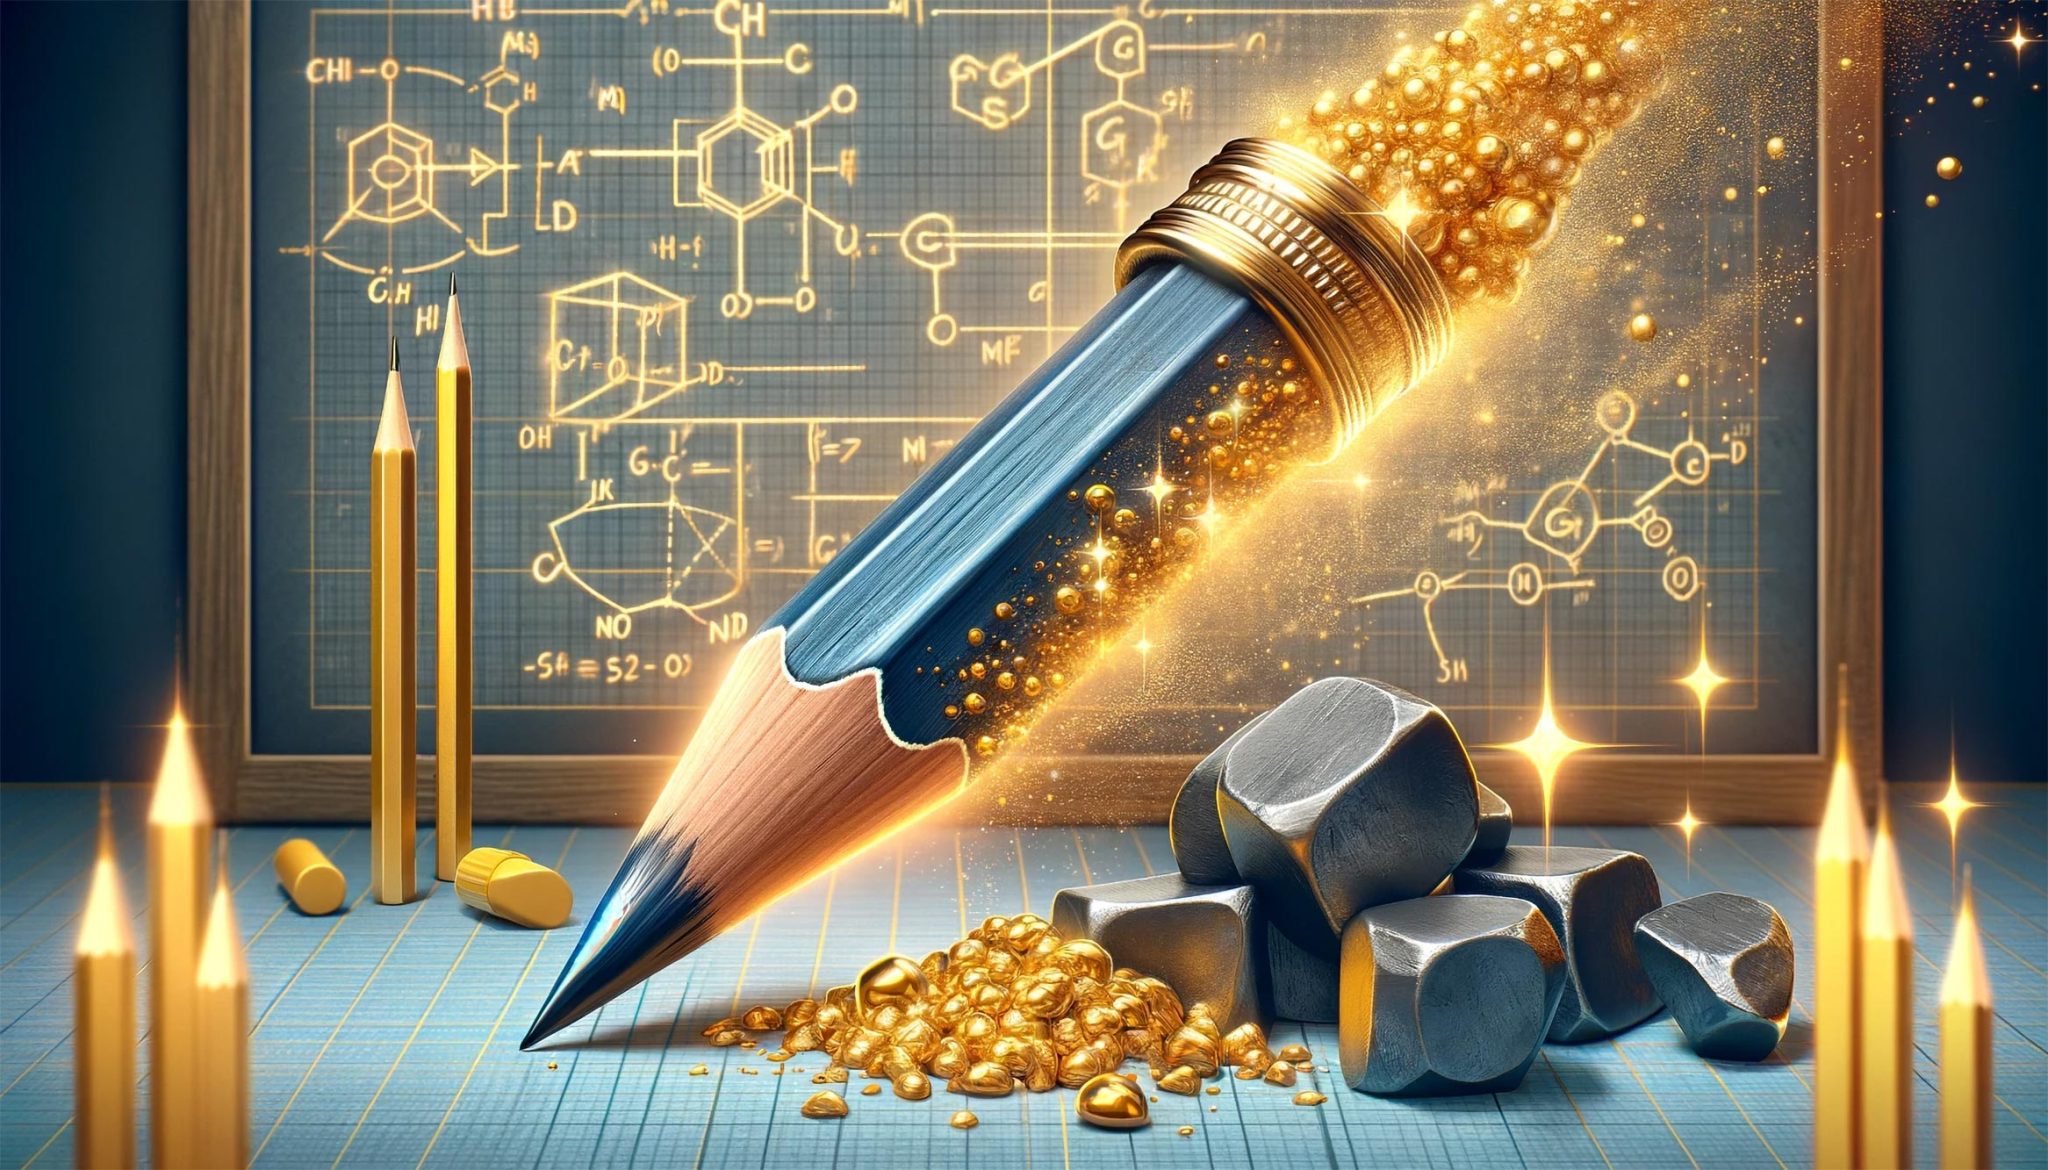 Φυσικοί από το Τεχνολογικό Ινστιτούτο της Μασαχουσέτης μετατρέπουν ένα μολύβι σε ηλεκτρονικό «χρυσό».